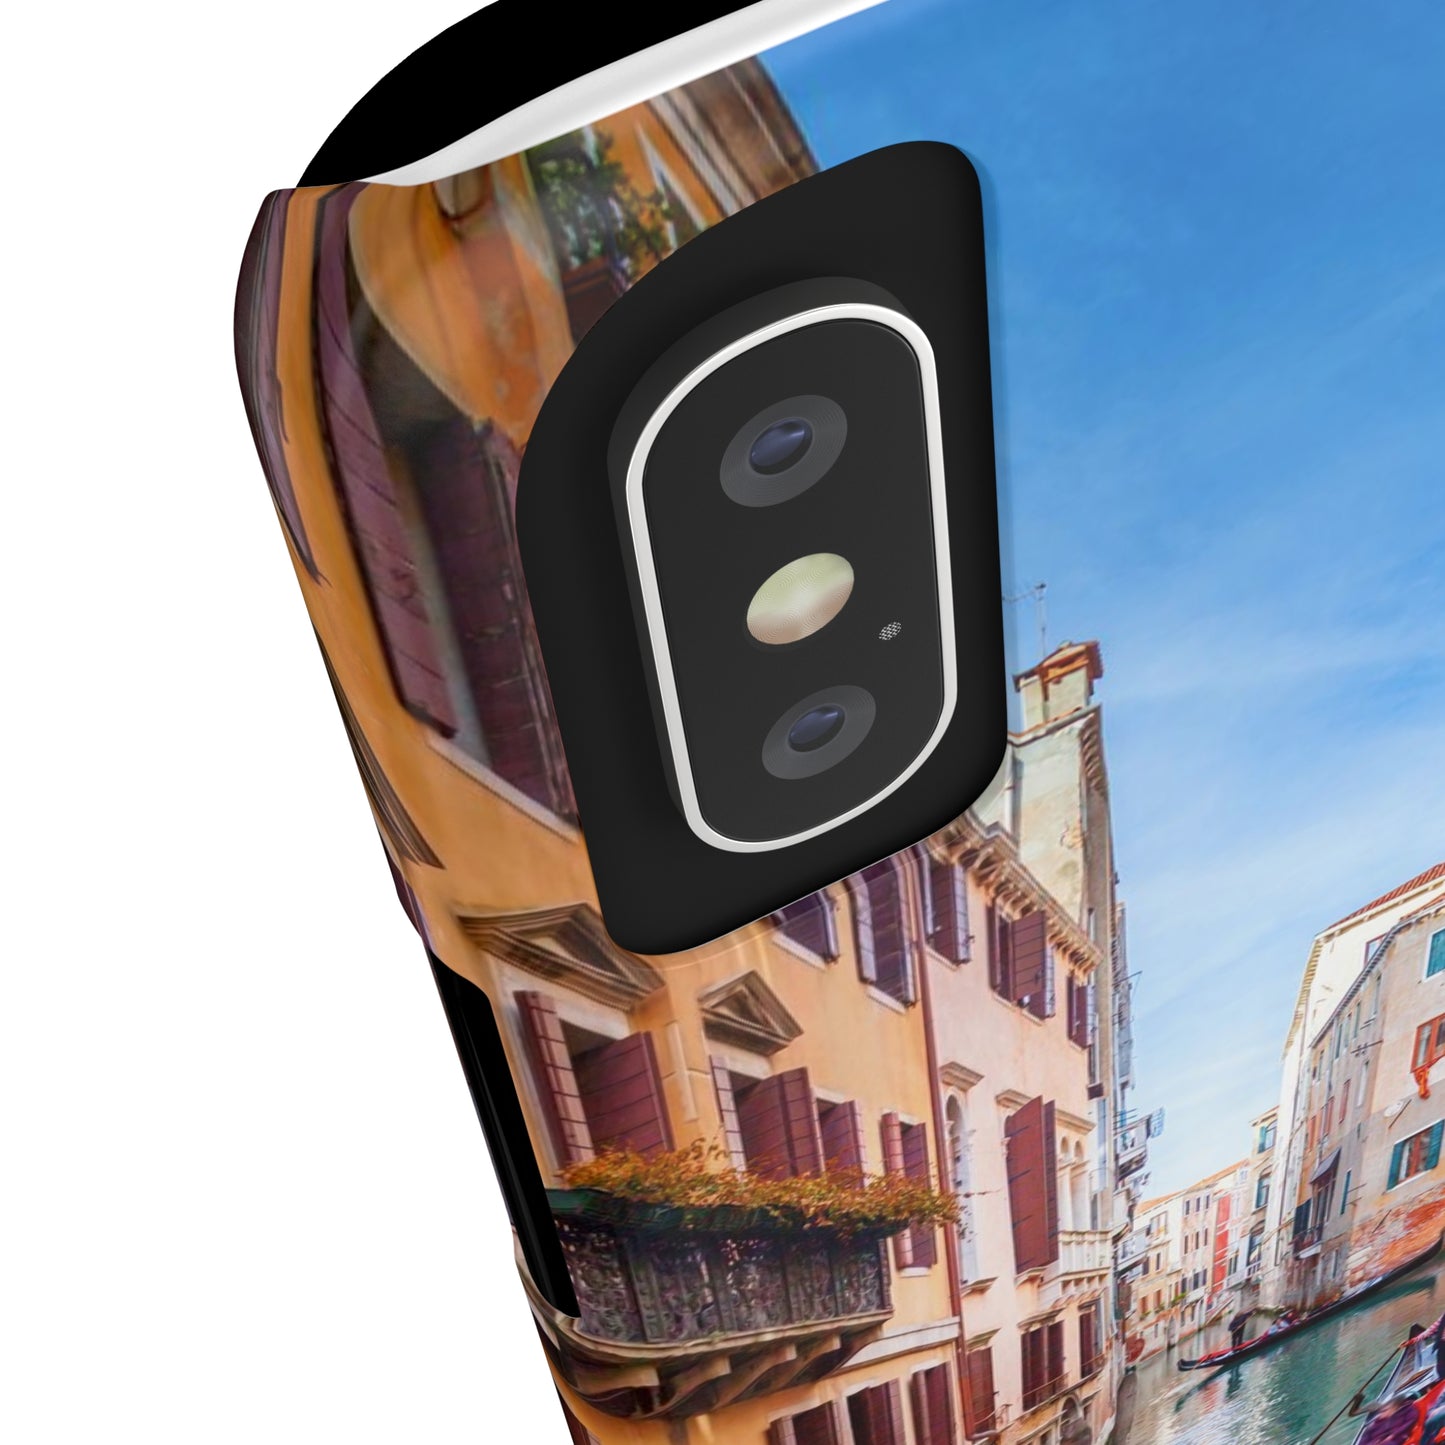 Estuches para teléfonos delgados con diseño de viaje de Venecia Italia